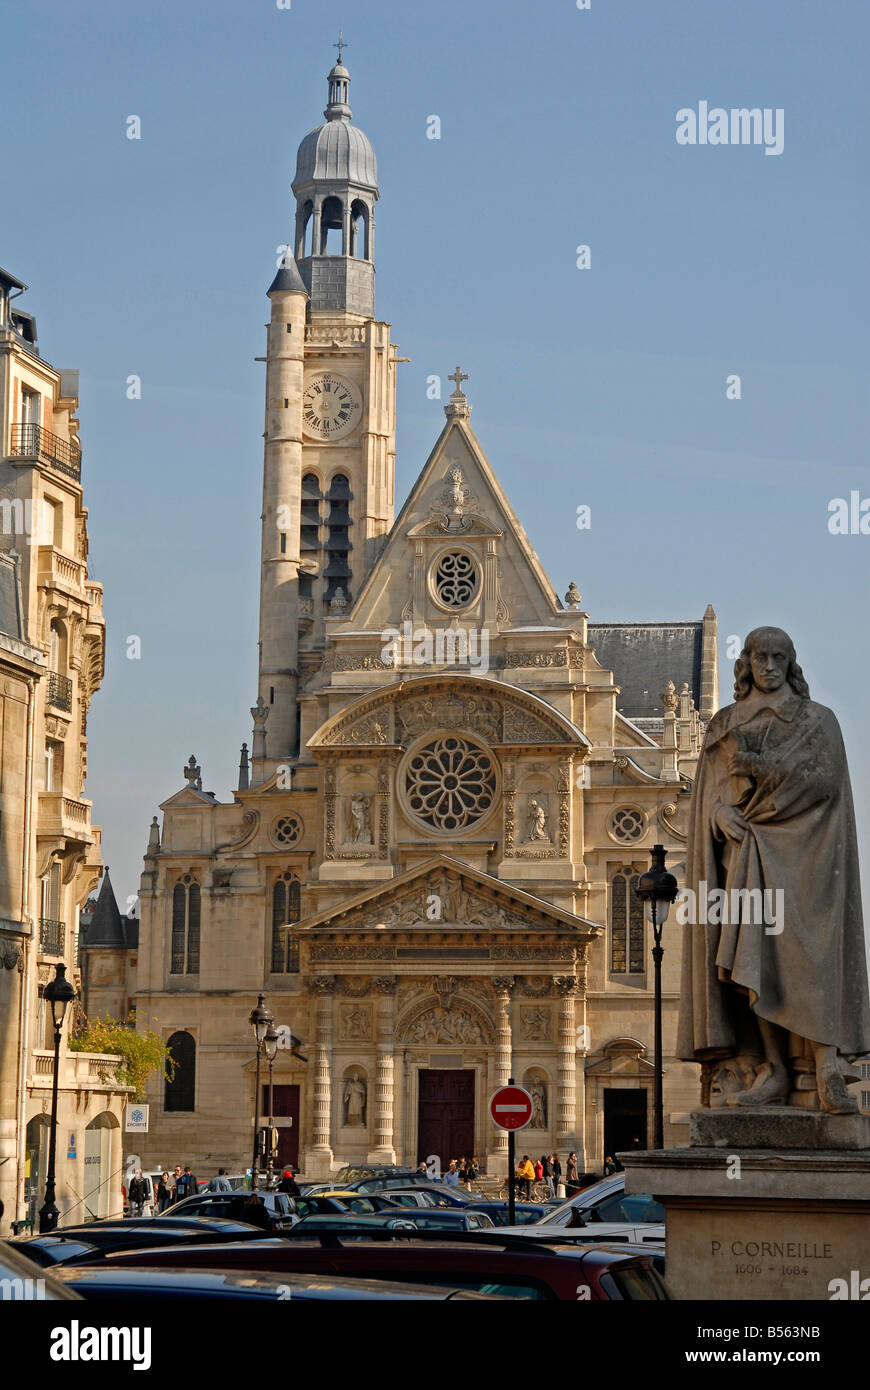 The church Saint Etienne du Mont in Paris France Stock Photo